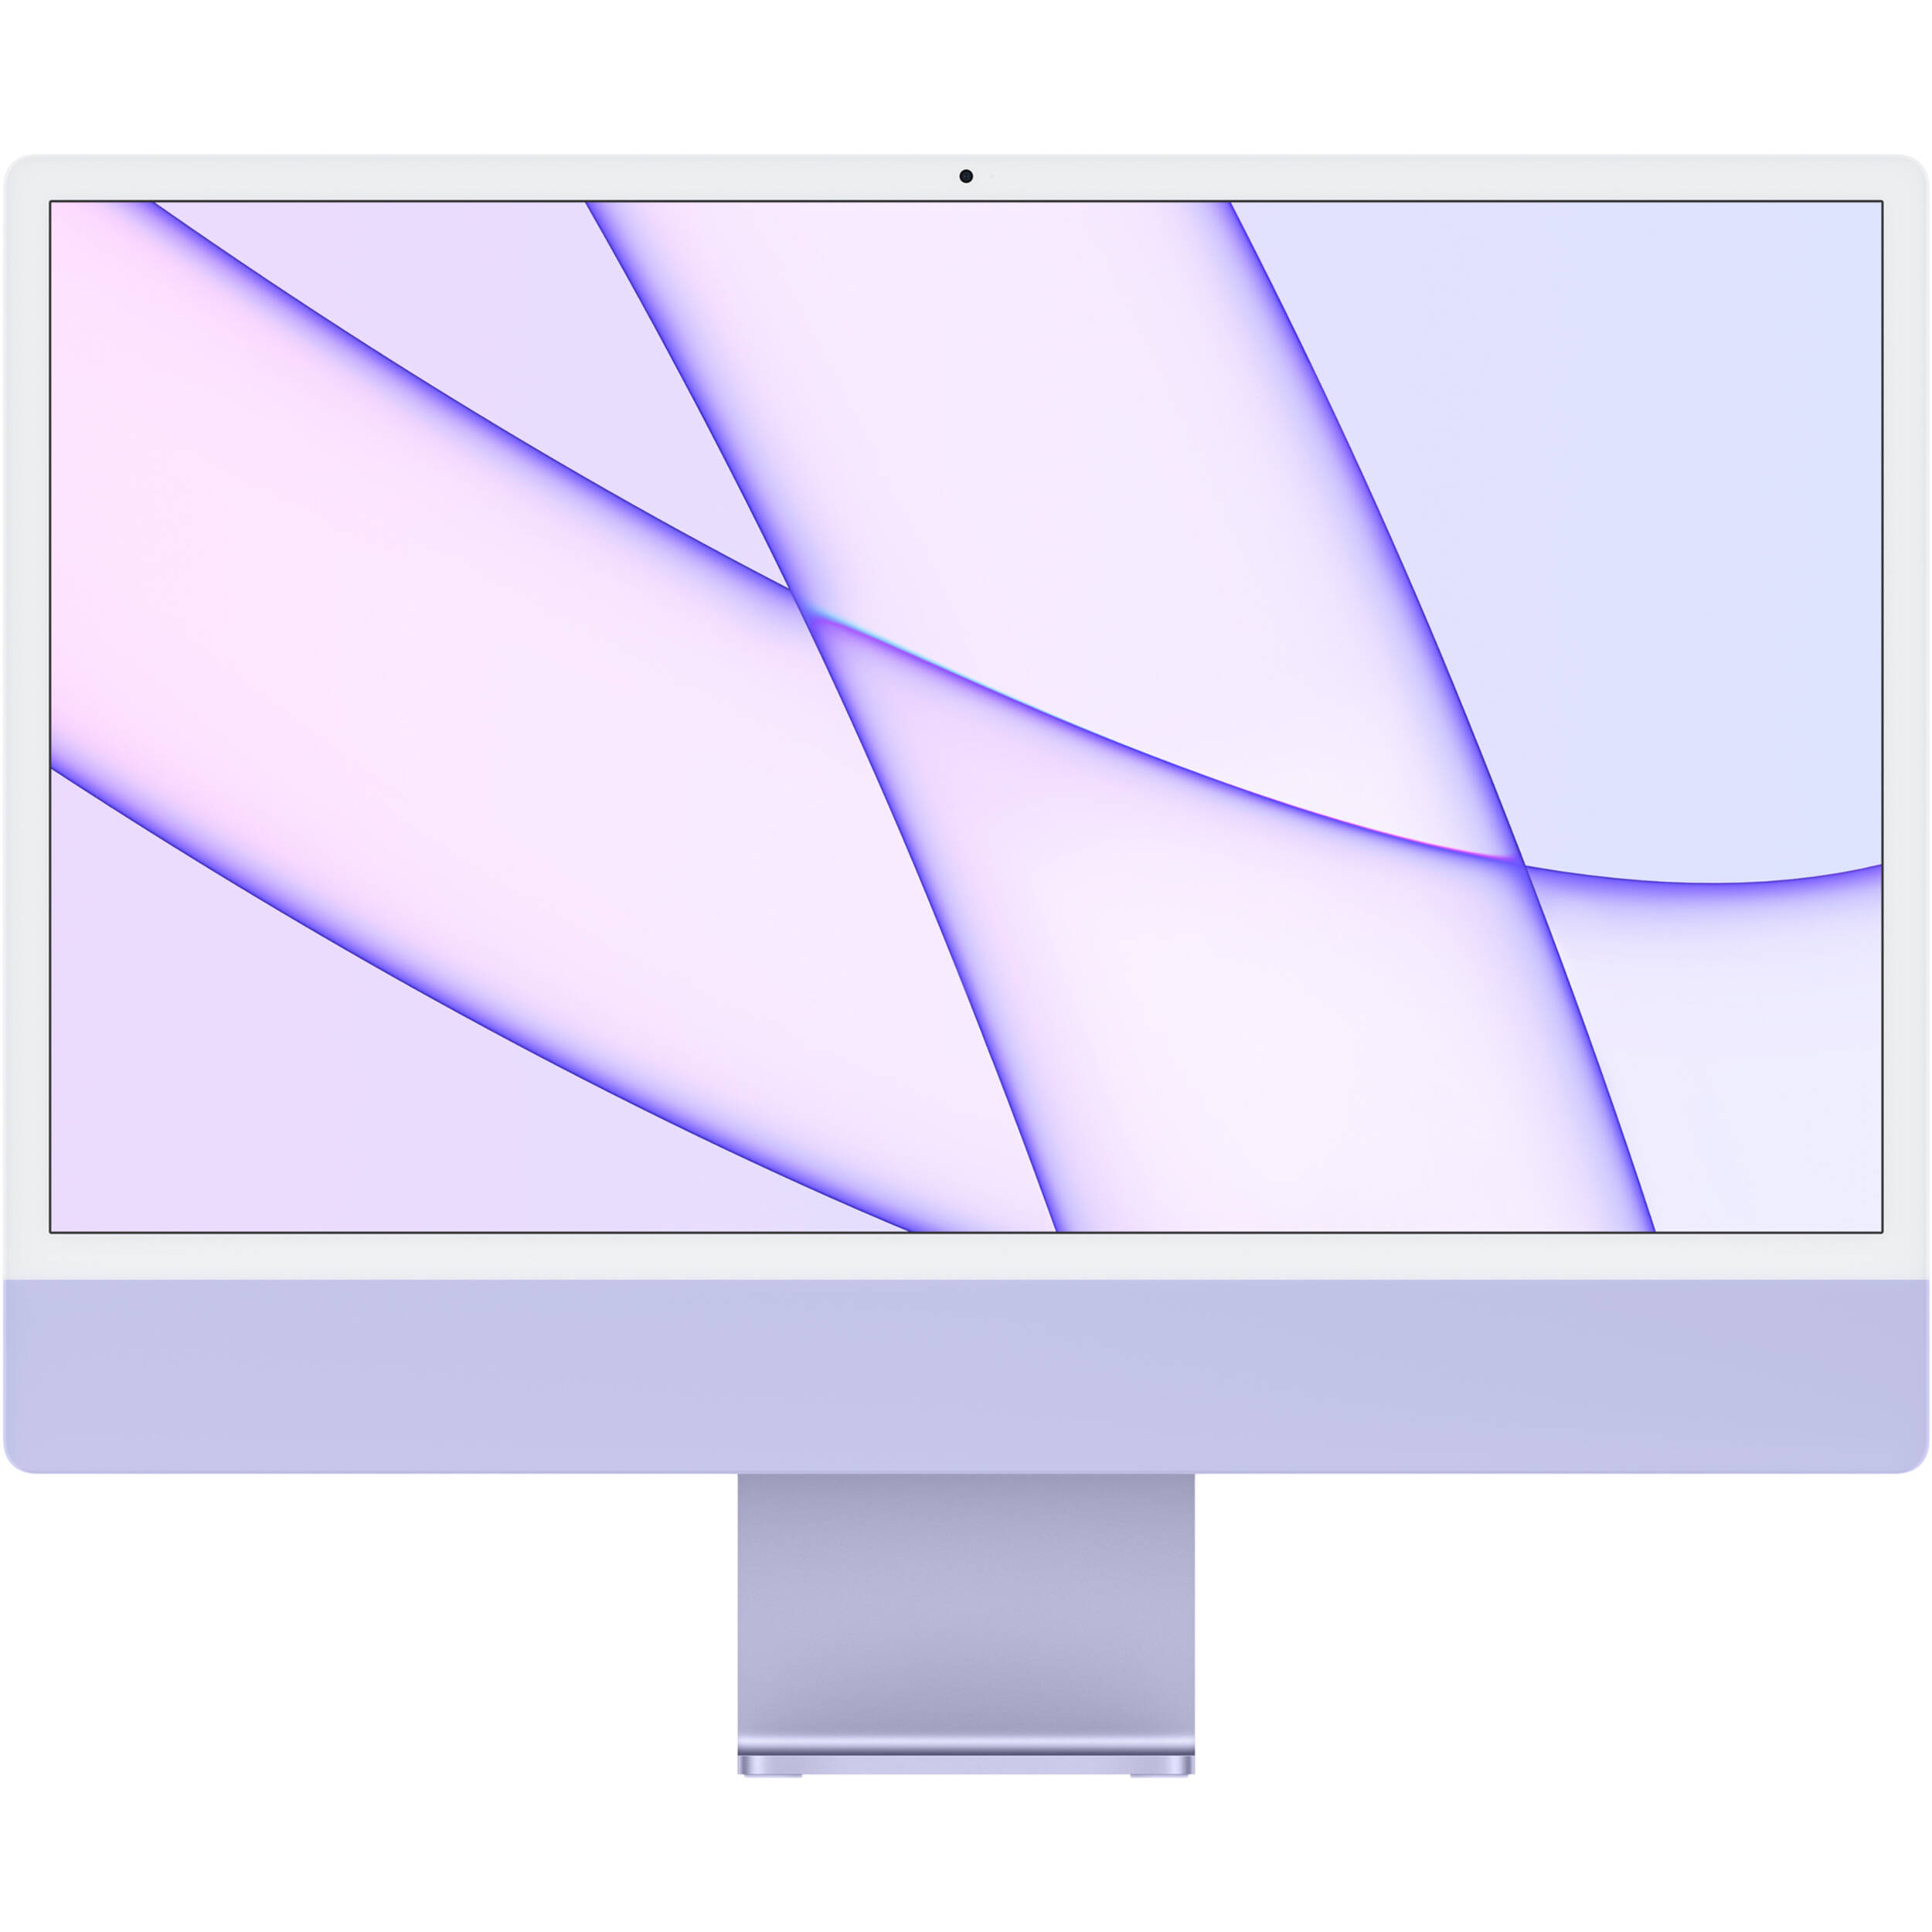 کامپیوتر همه کاره 24 اینچی اپل مدل iMac-D 2021